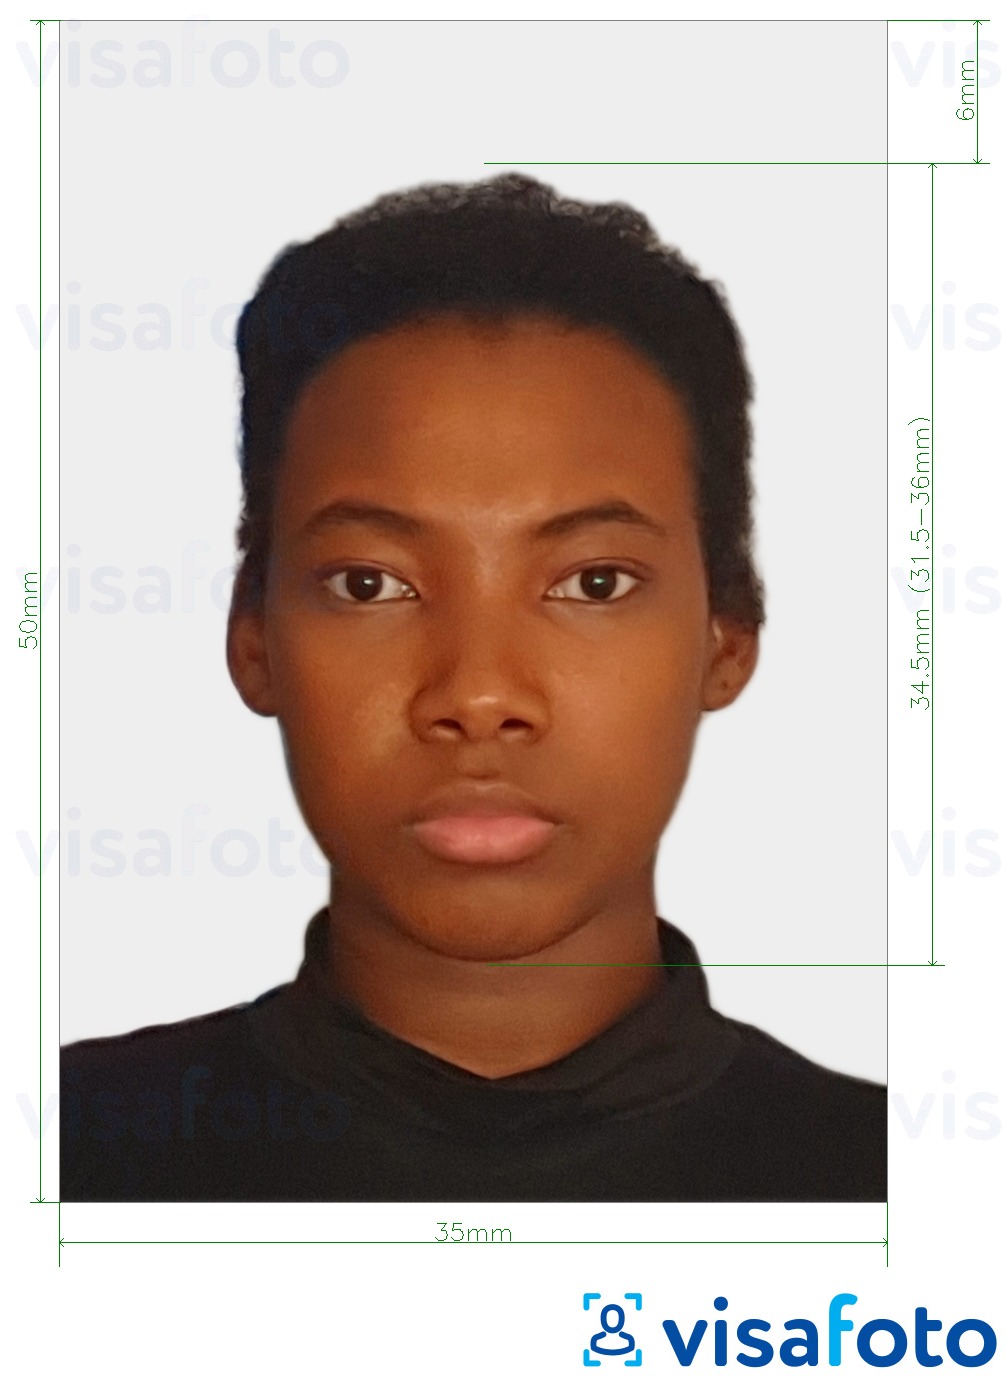 Contoh dari foto untuk Paspor Suriname 50x35 mm dengan ukuran spesifikasi yang tepat